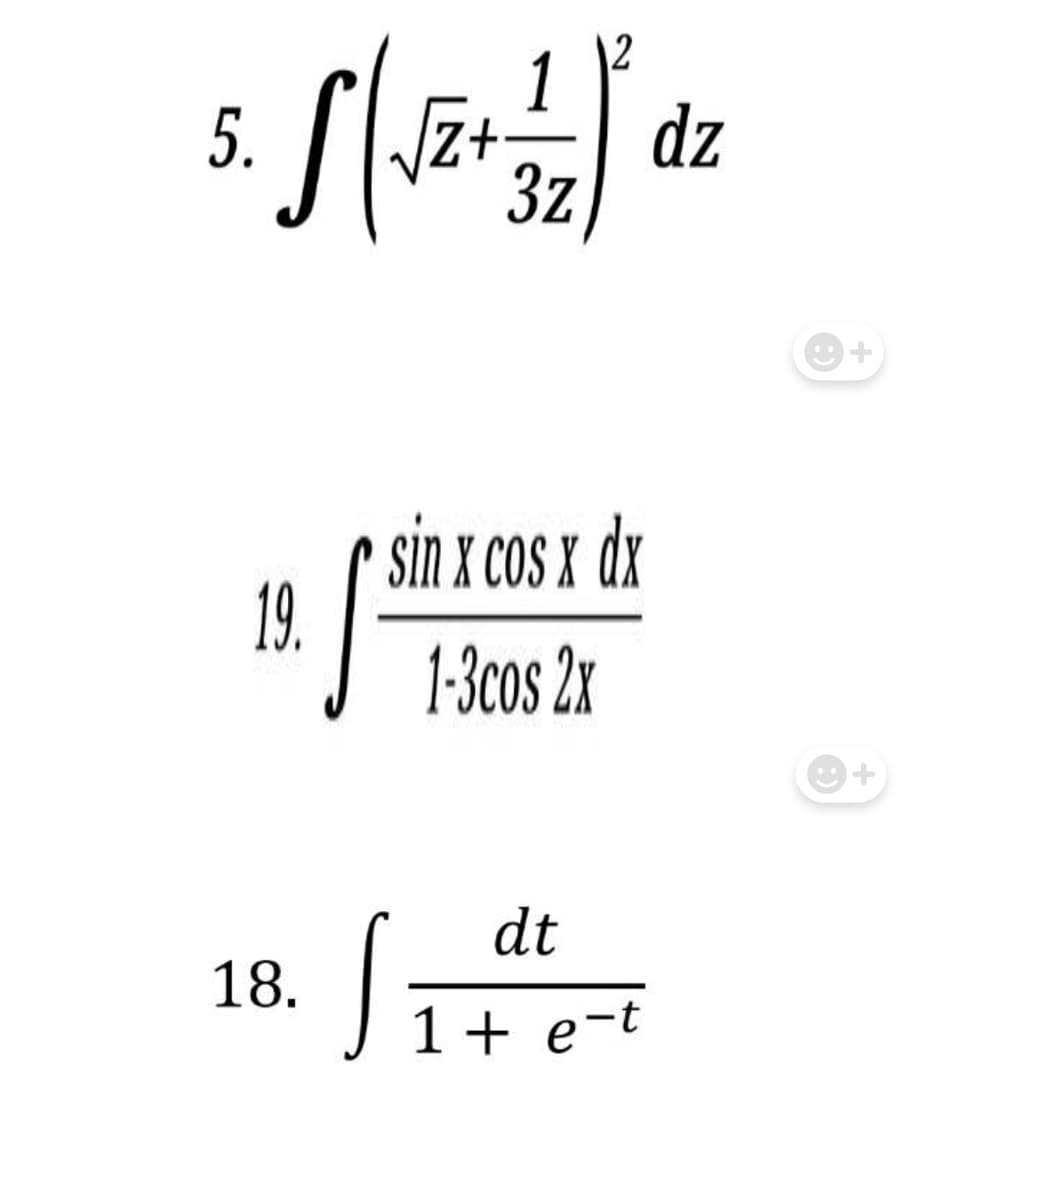 1
5. S (√2+ = 2 )' dz
√√Z+
3z
sin x cos x dx
19.
1-3cos 2x
dt
1 + e-t
18.
S